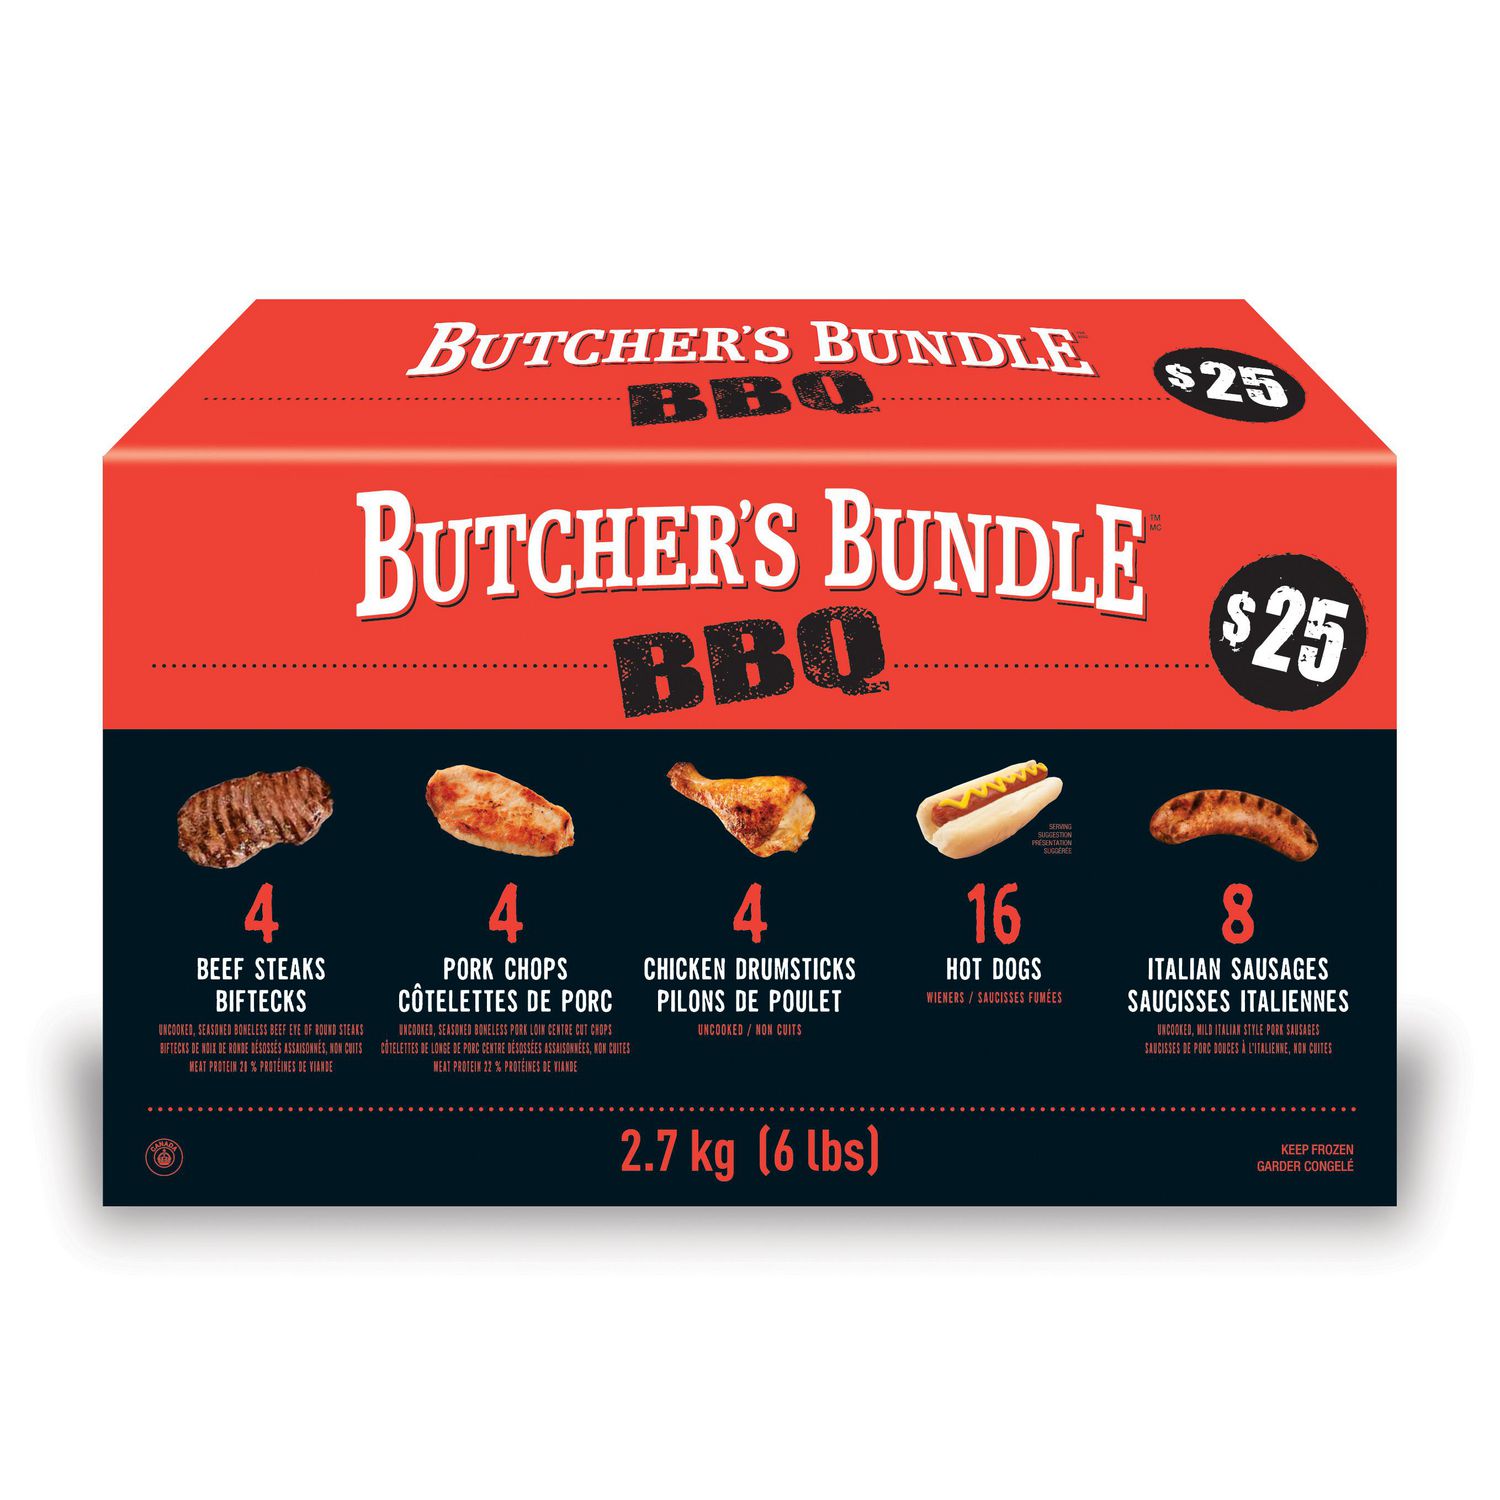 The Butchers Bundle